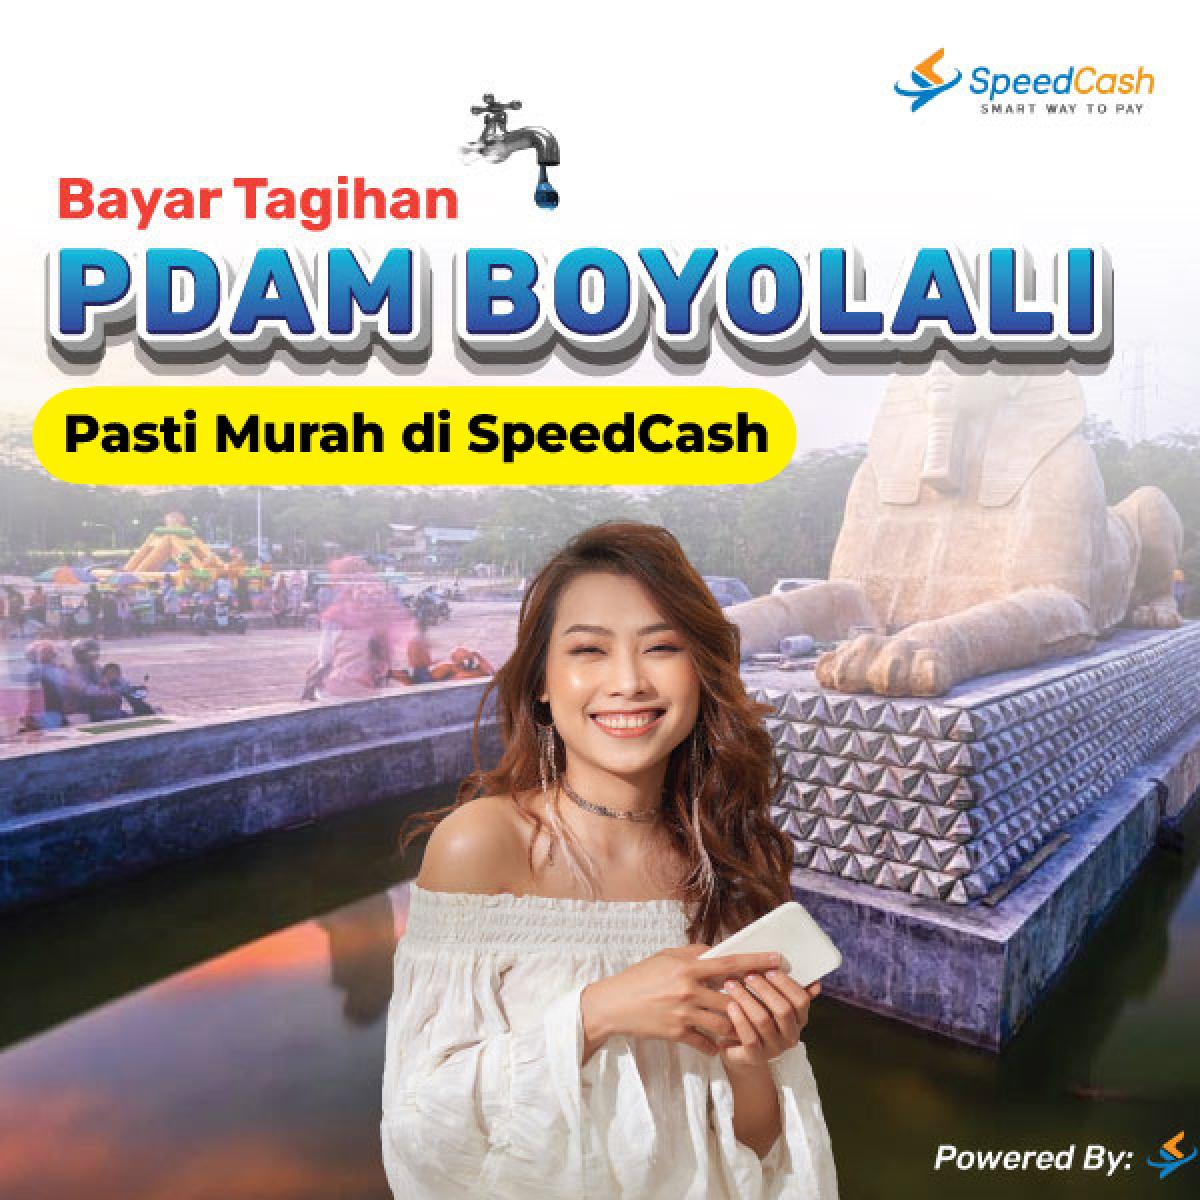 cek tagihan pdam Boyolali dan bayar bisa melalui online - SpeedCash